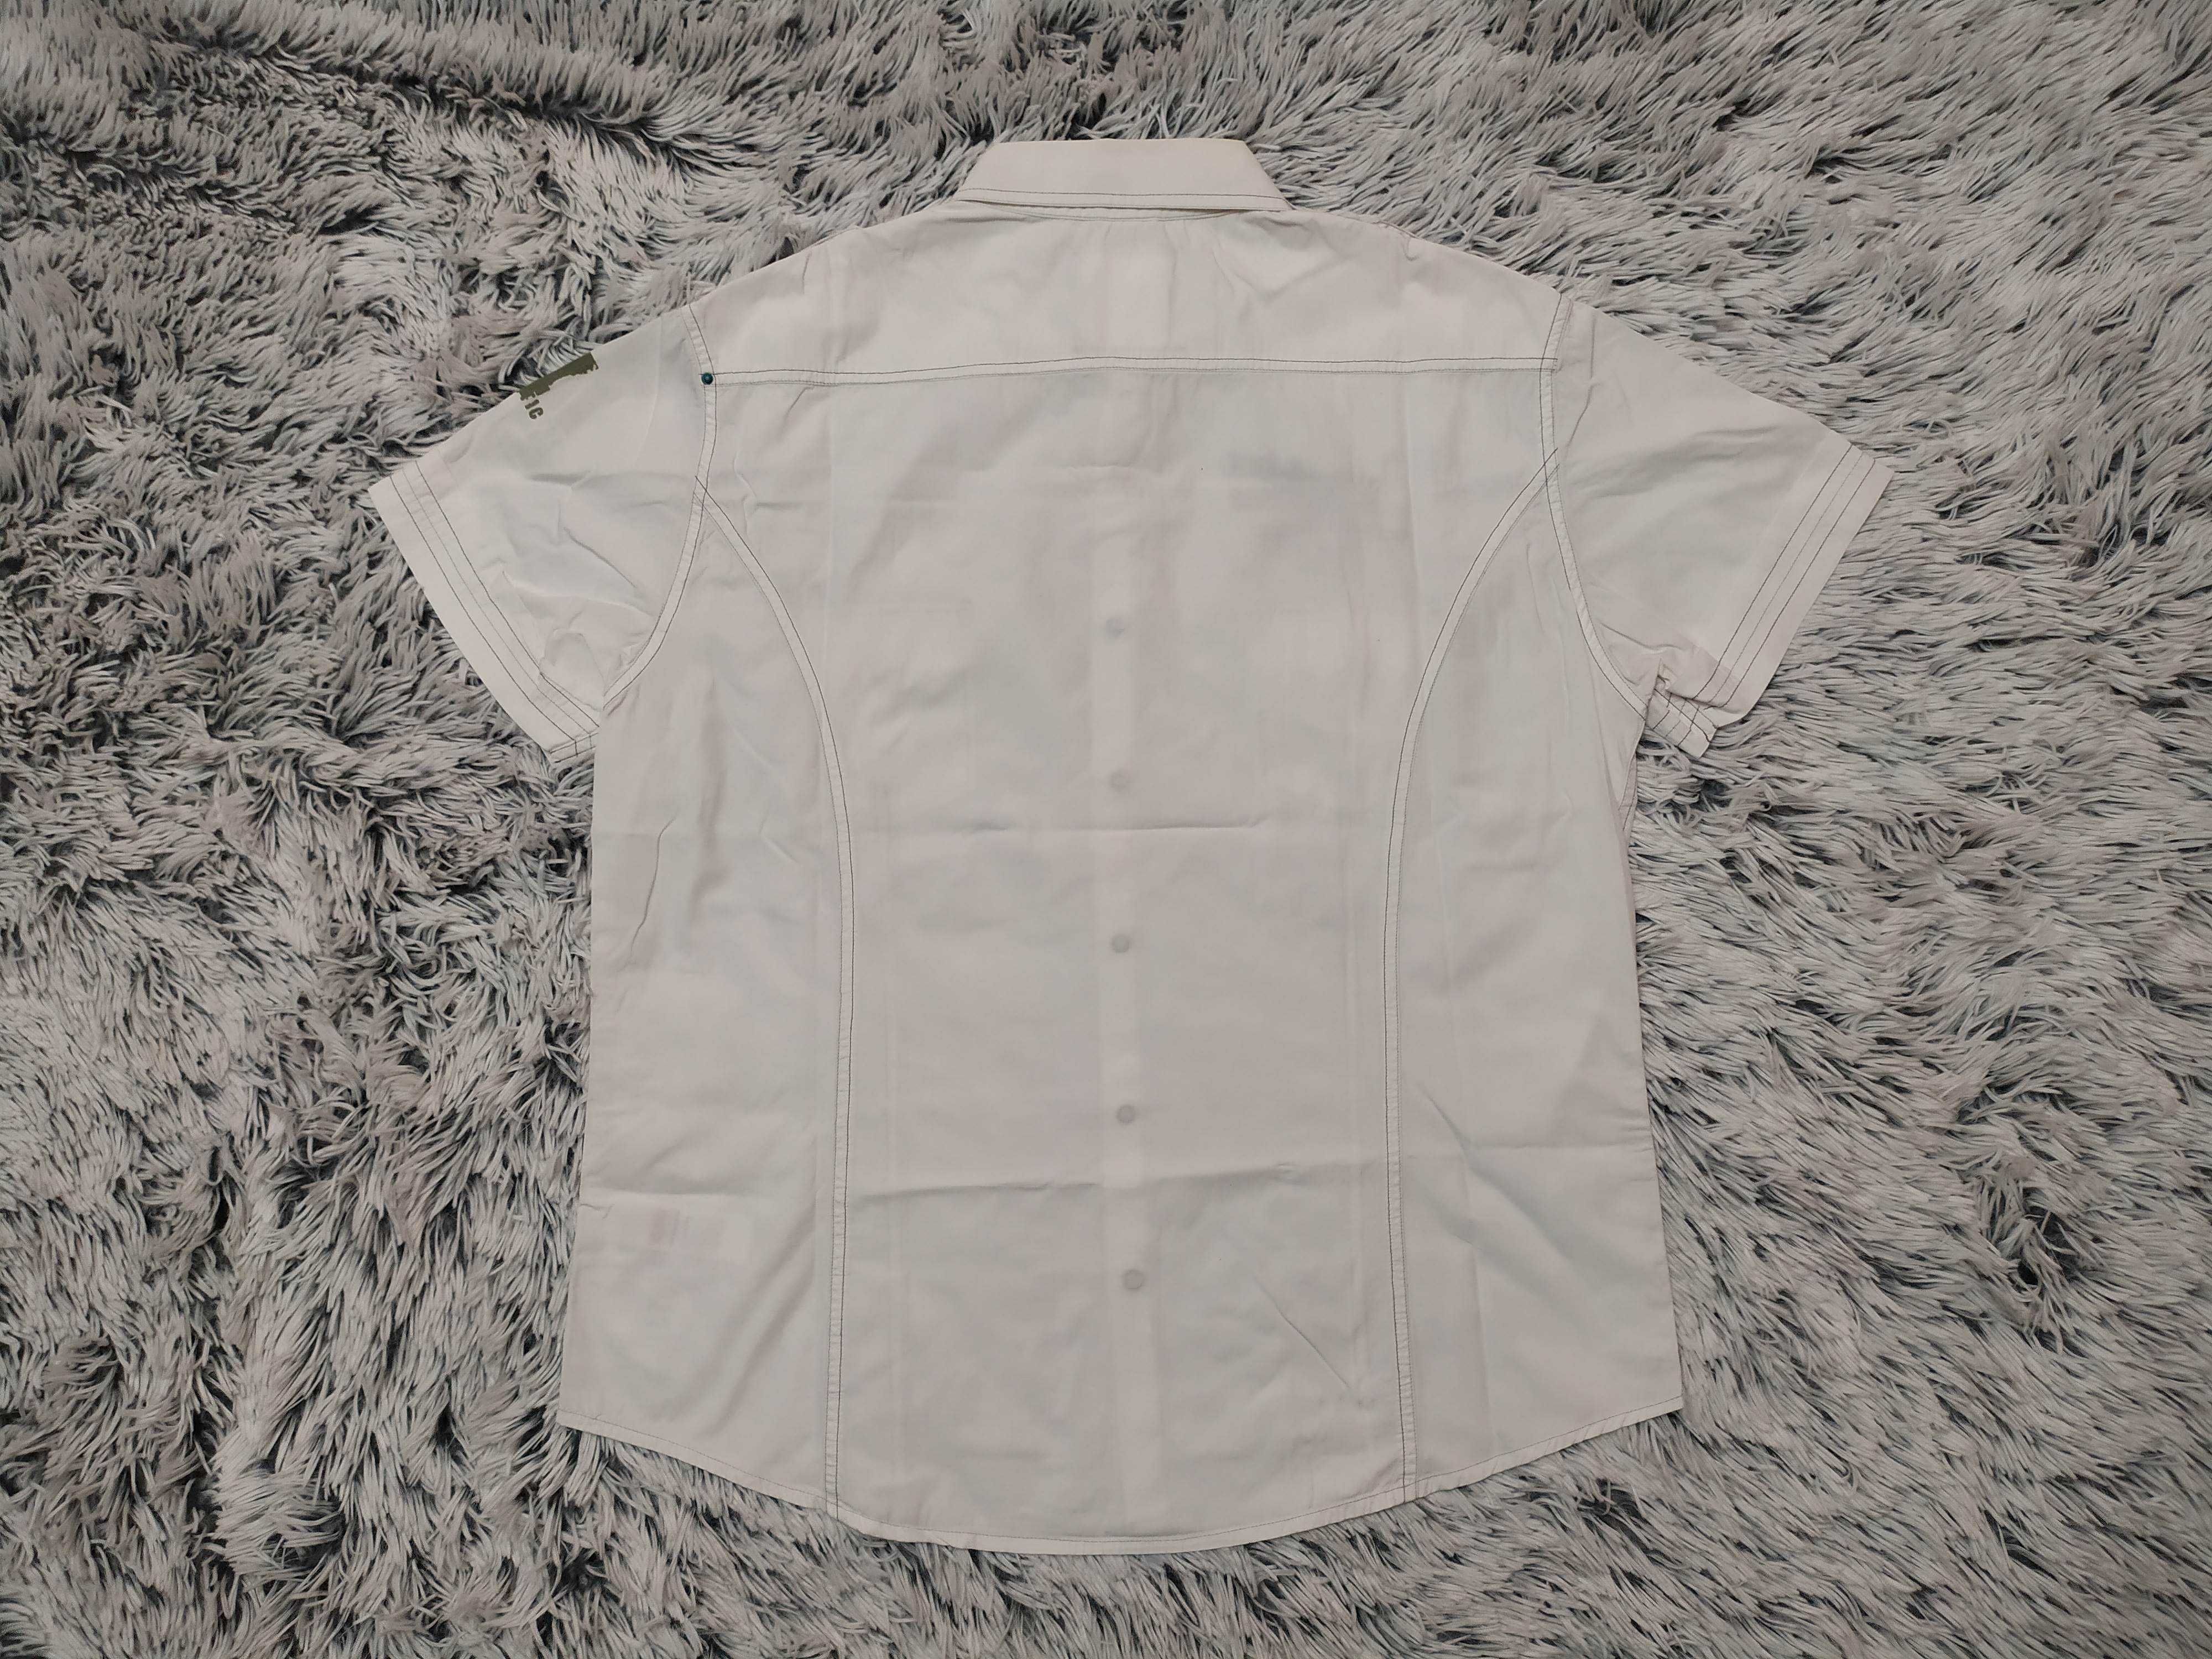 Koszula biała z krótkimi rękawami, styl militarny, L, New Look